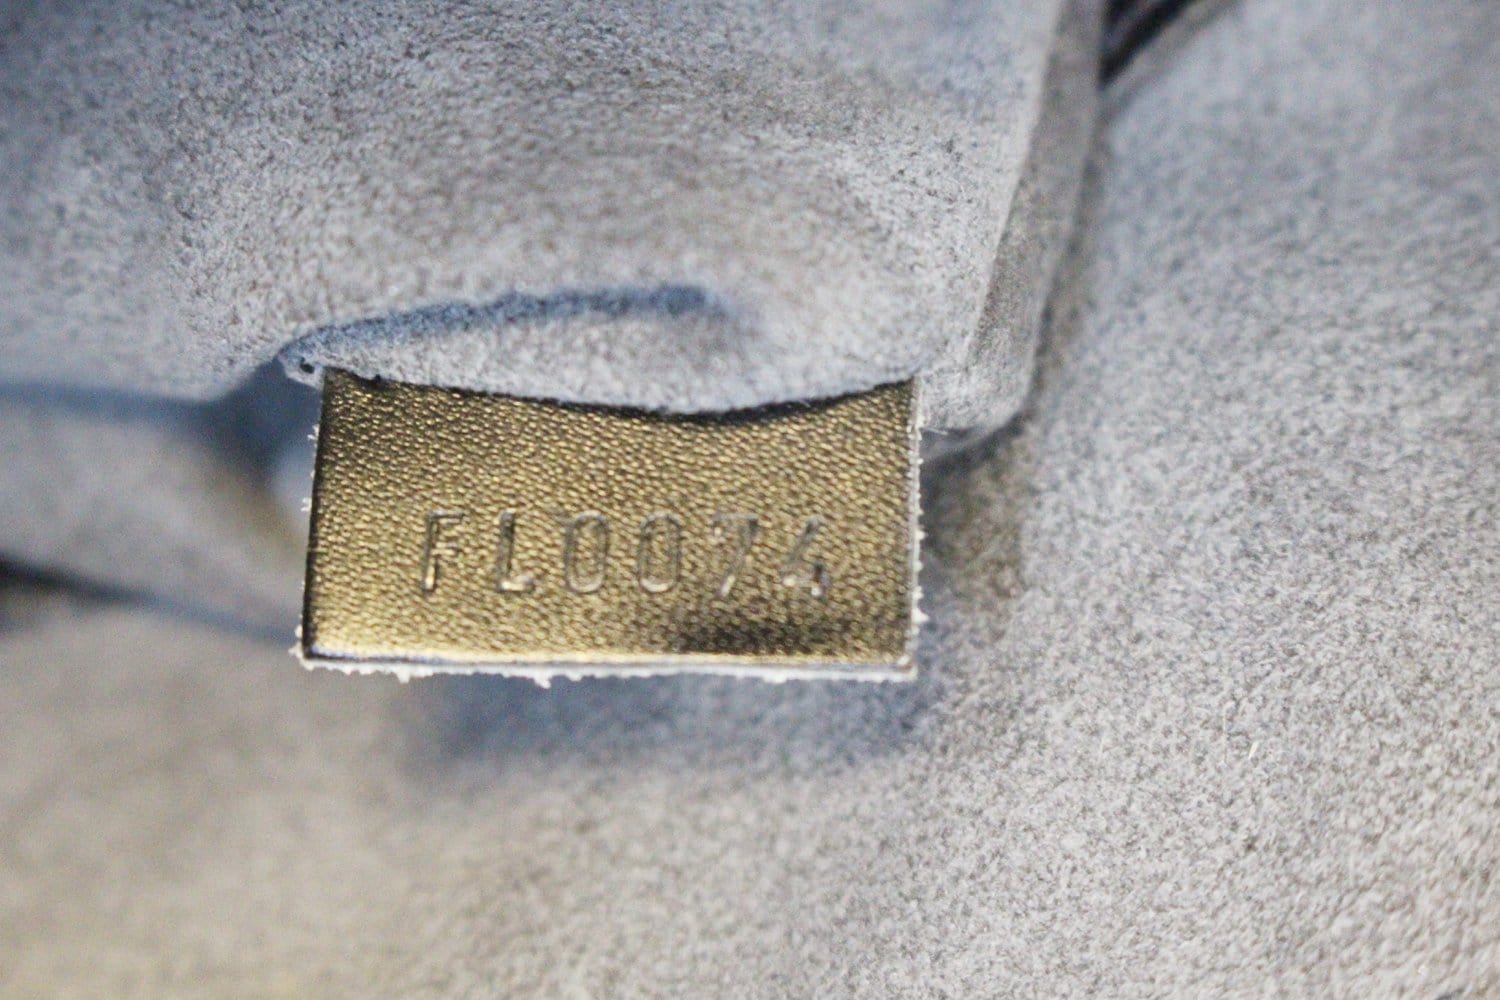 Authentic Louis Vuitton Black Epi Leather Alma PM Hand Bag – Paris